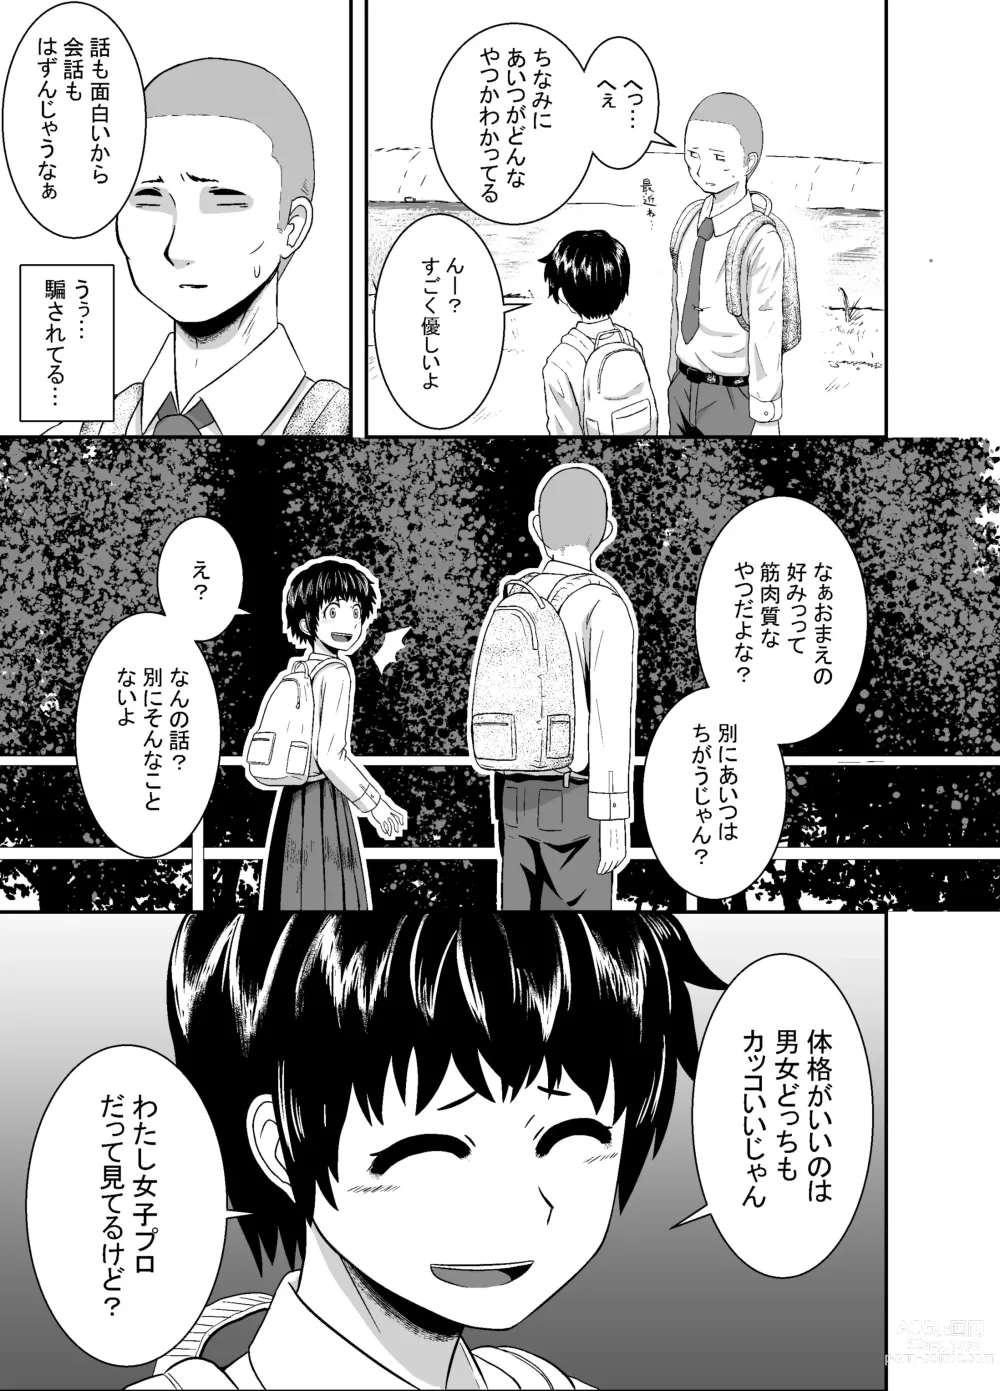 Page 16 of doujinshi Kimi ga Yarareru Kurai nara ~Genkikko Crisis~